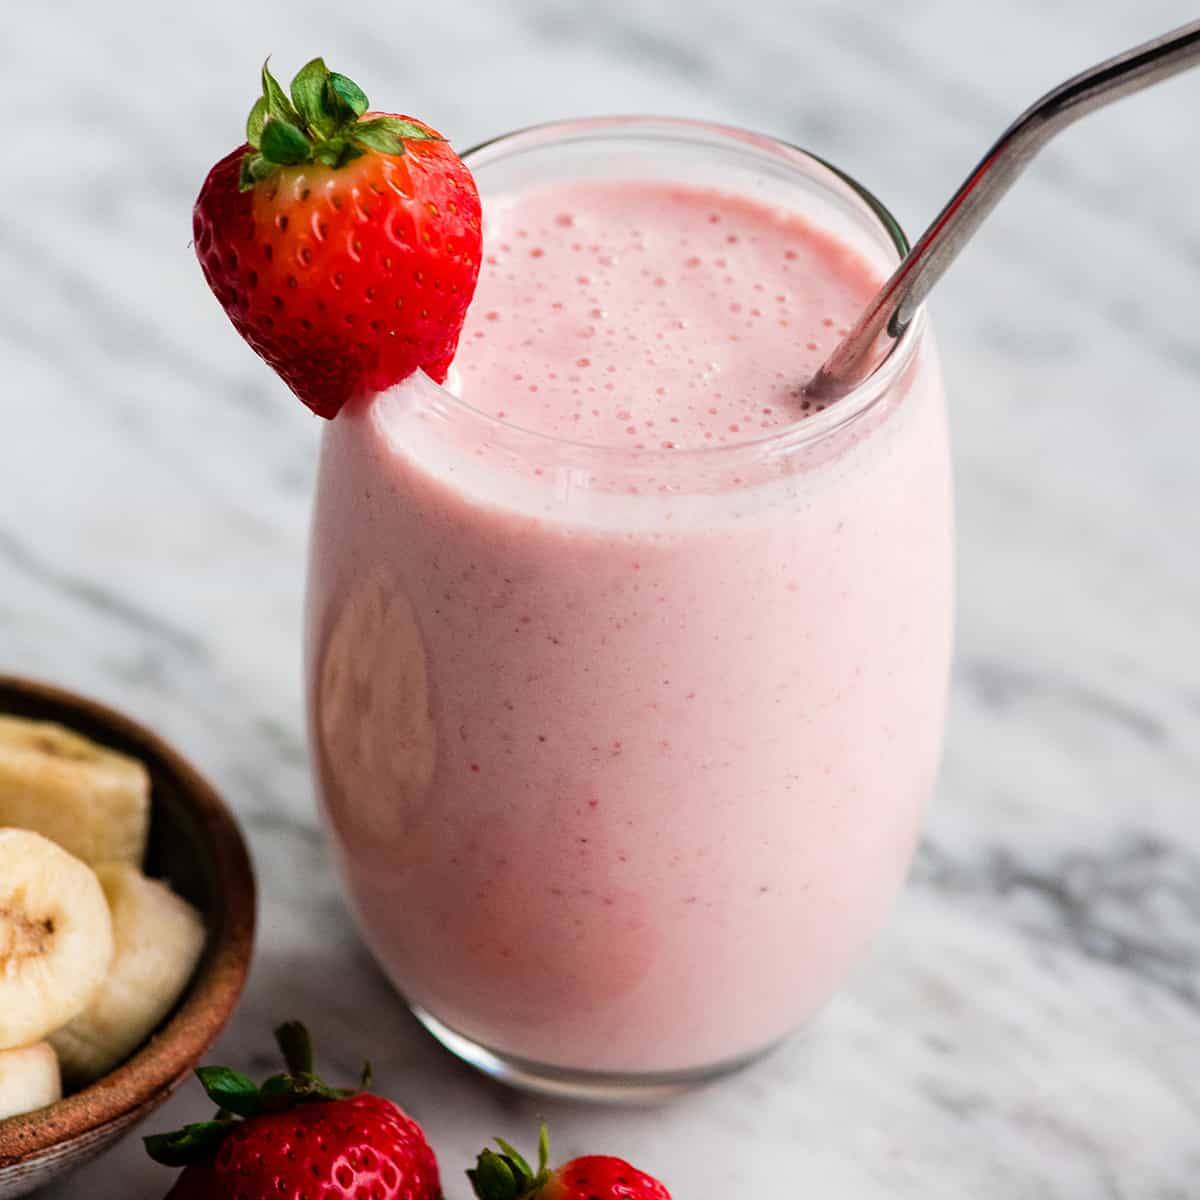 Healthy Breakfast Recipes strawberry banana smoothie